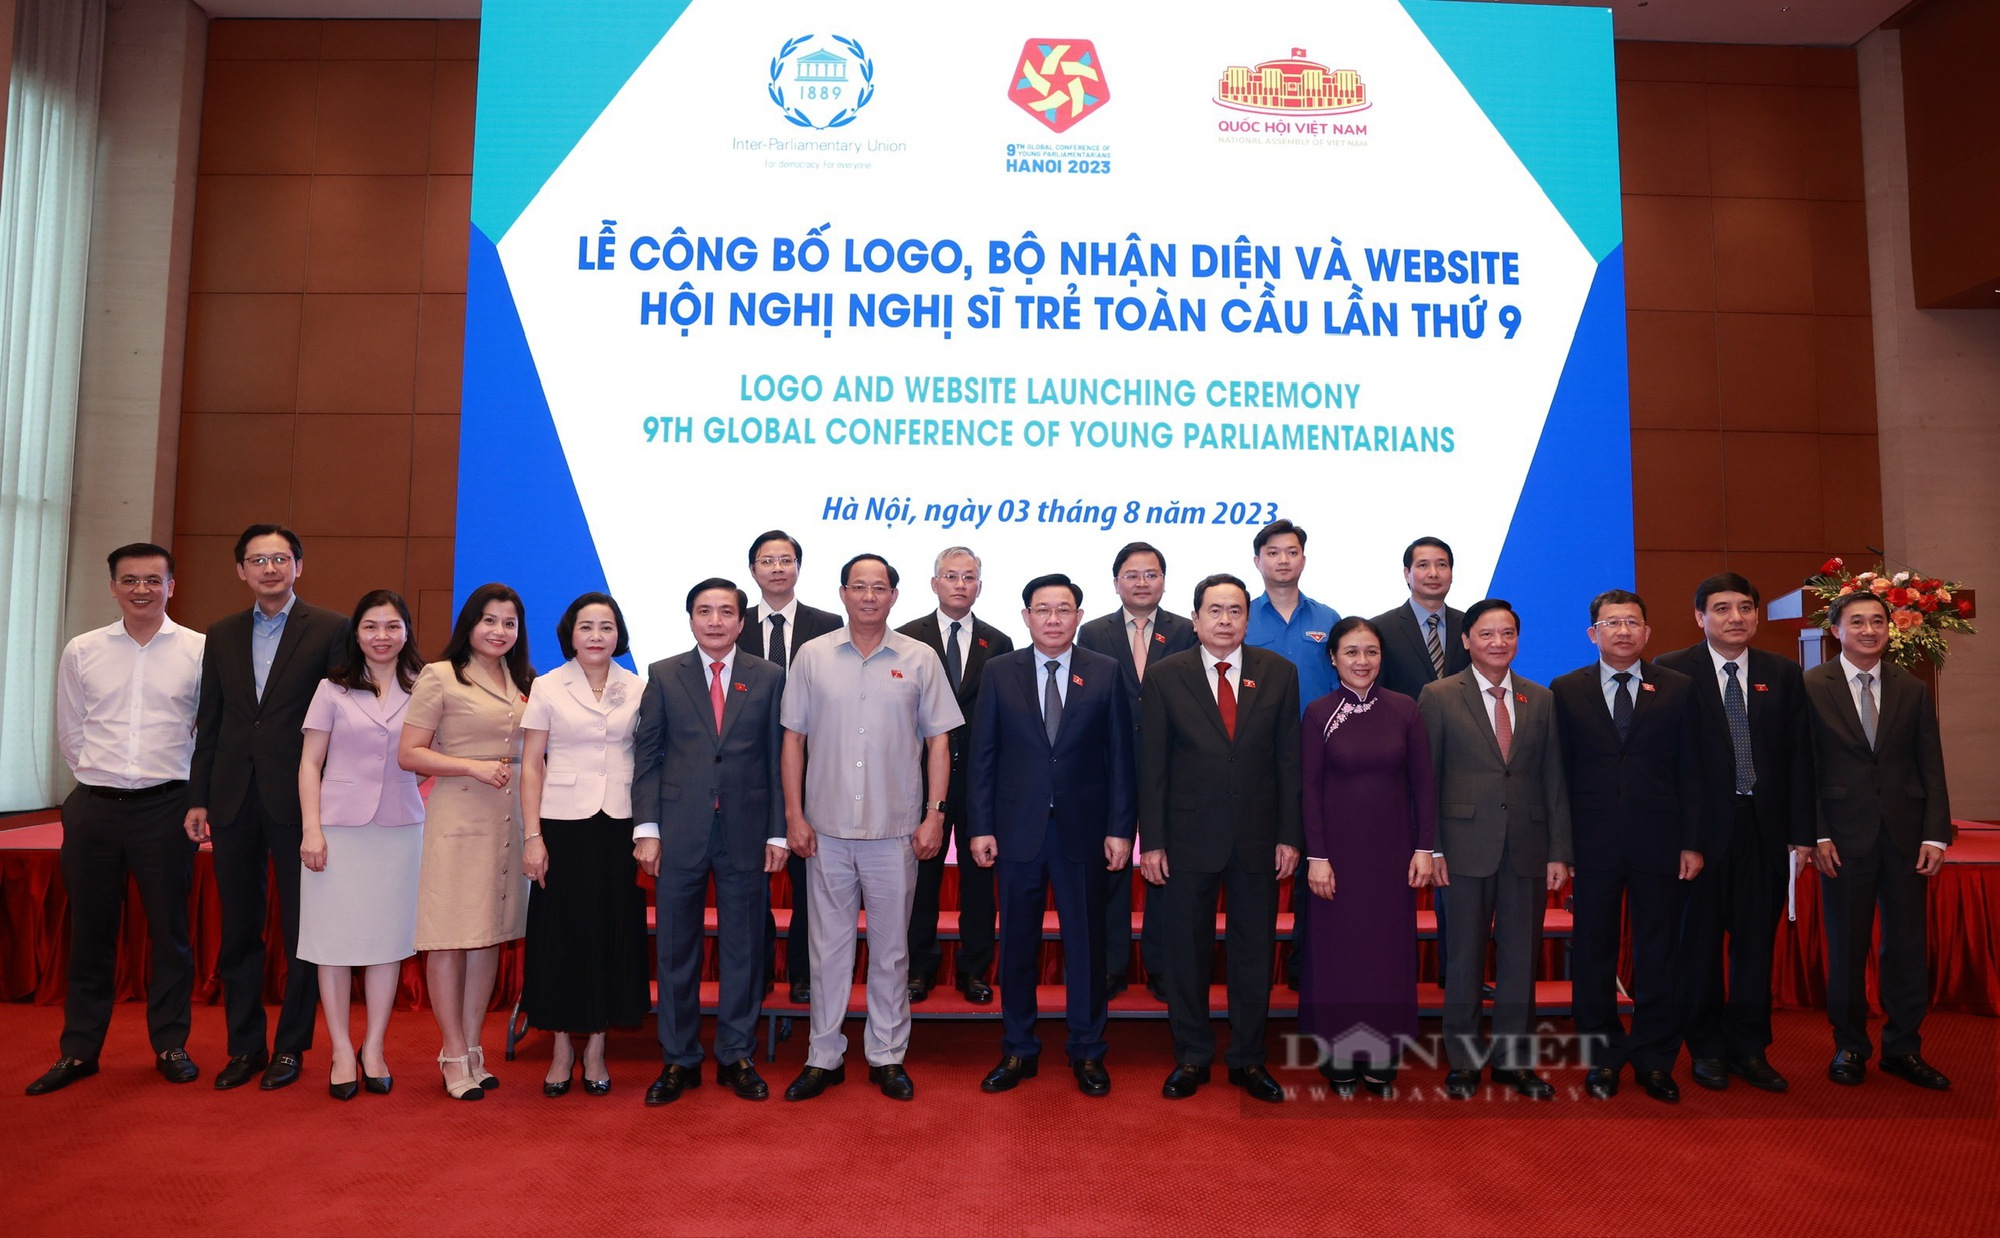 3 nội dung hấp dẫn tại Hội nghị Nghị sĩ trẻ toàn cầu lần thứ 9 do Việt Nam đăng cai tổ chức - Ảnh 4.